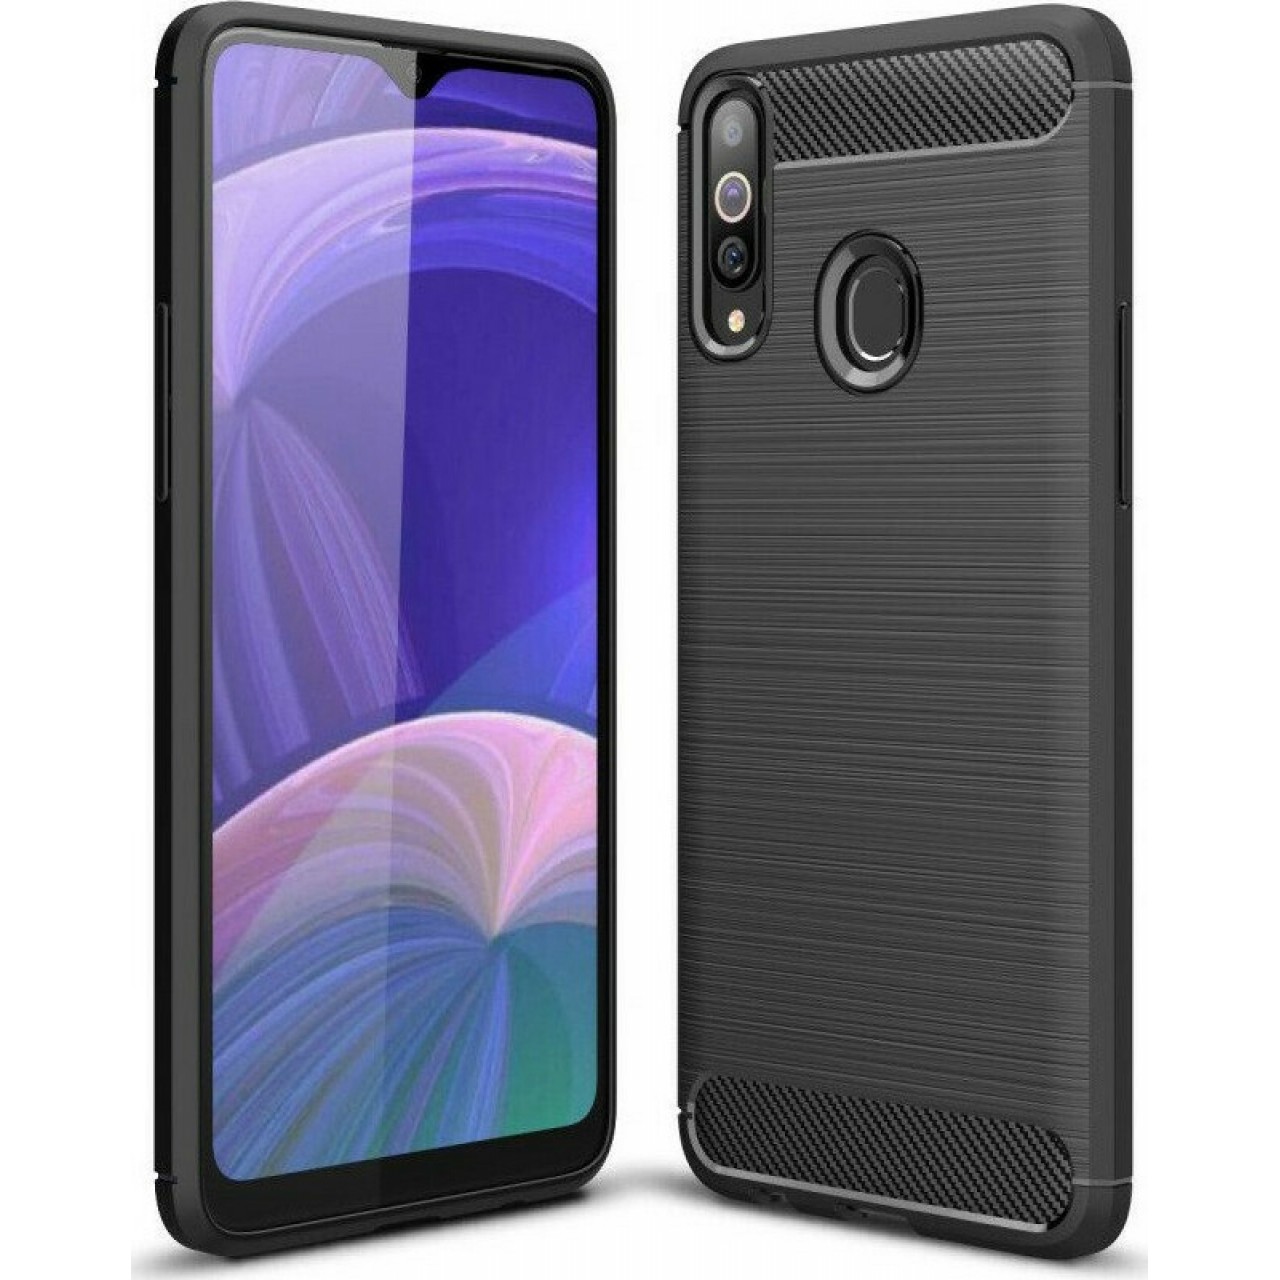 Θήκη Προστασίας Samsung Galaxy A20s - Back Cover Case TPU Oem - Carbon Fiber Black